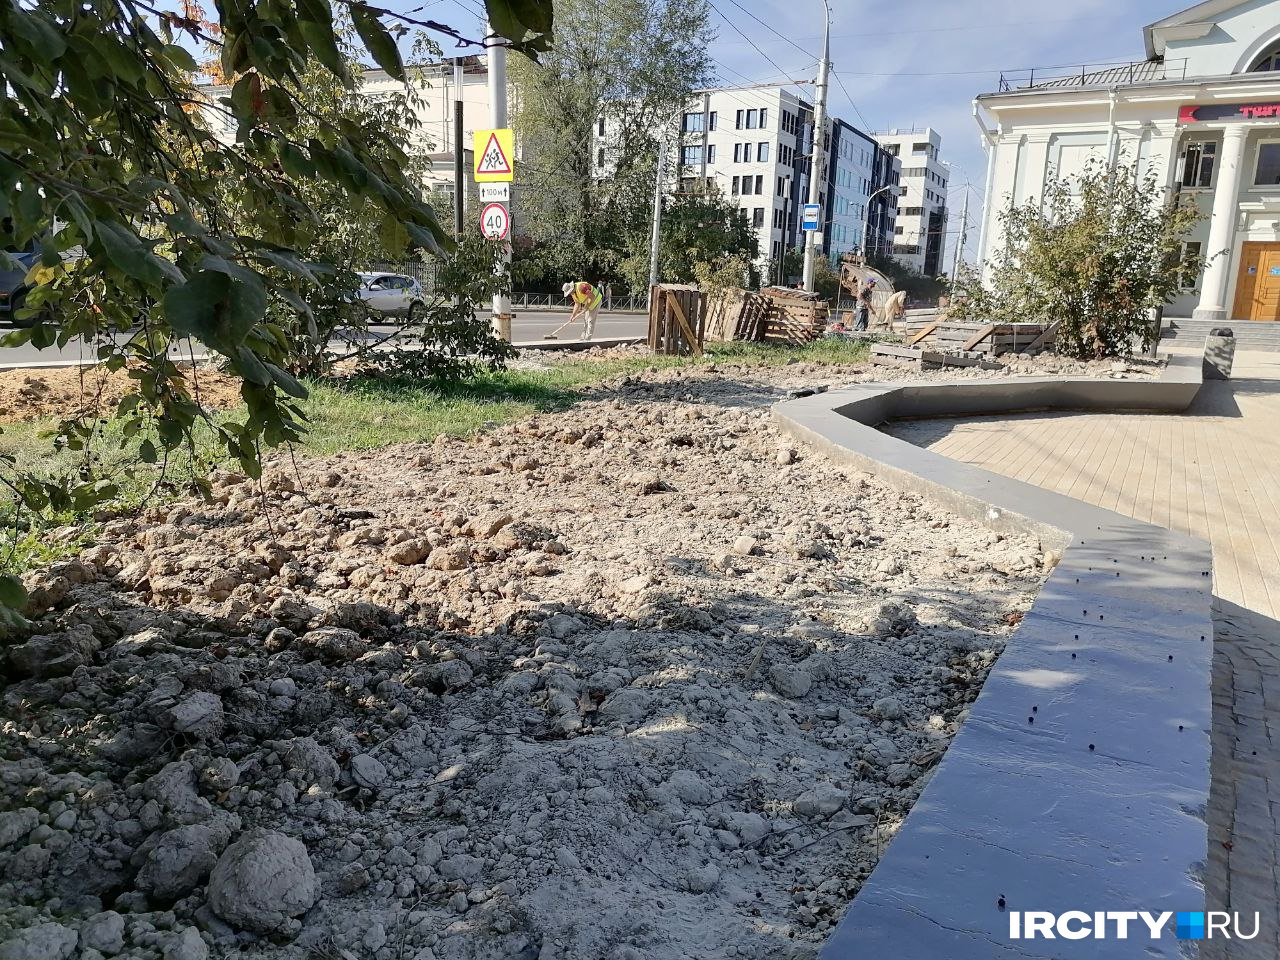 11 территорий Иркутска должны были благоустроить к 1 сентября. Проверяем, что успели подрядчики — онлайн - 2 сентября 2022 - ircity.ru